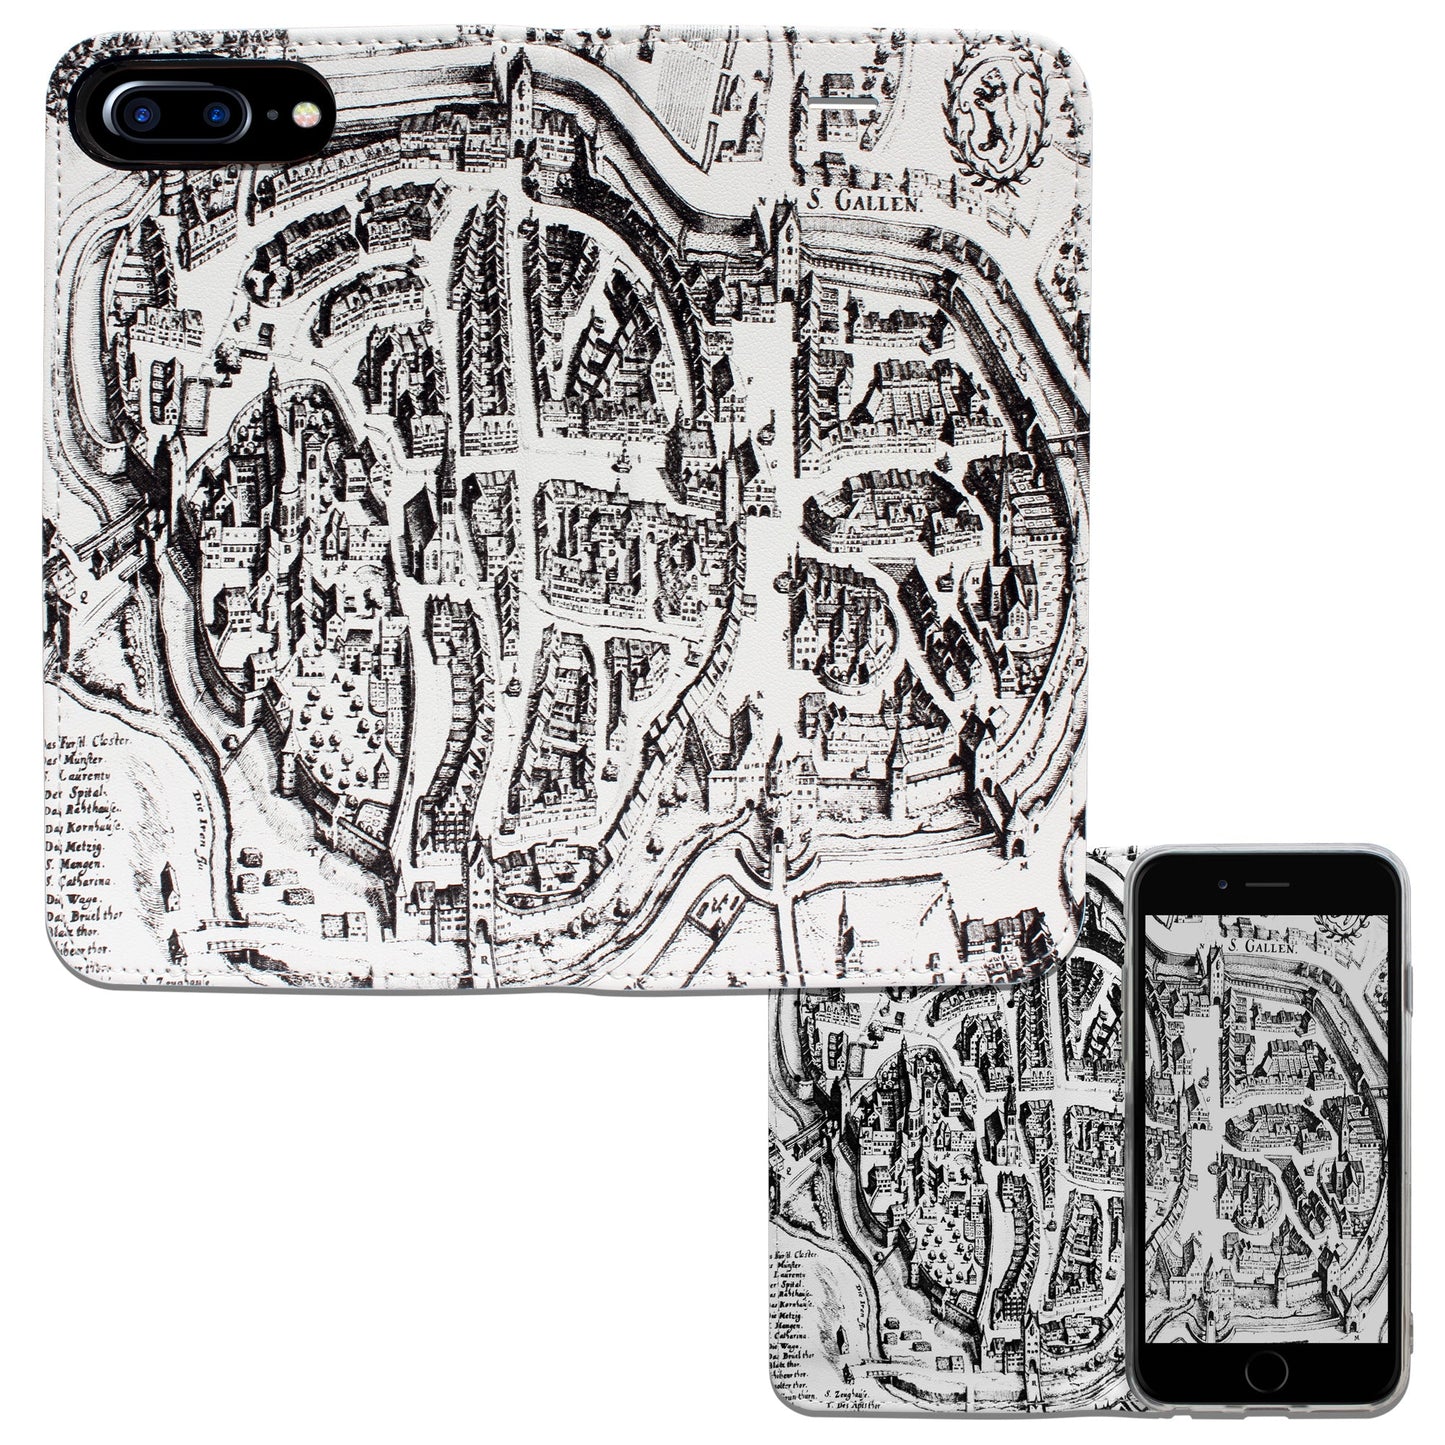 Coque St. Gallen Merian Panorama pour iPhone 6/6S/7/8 Plus